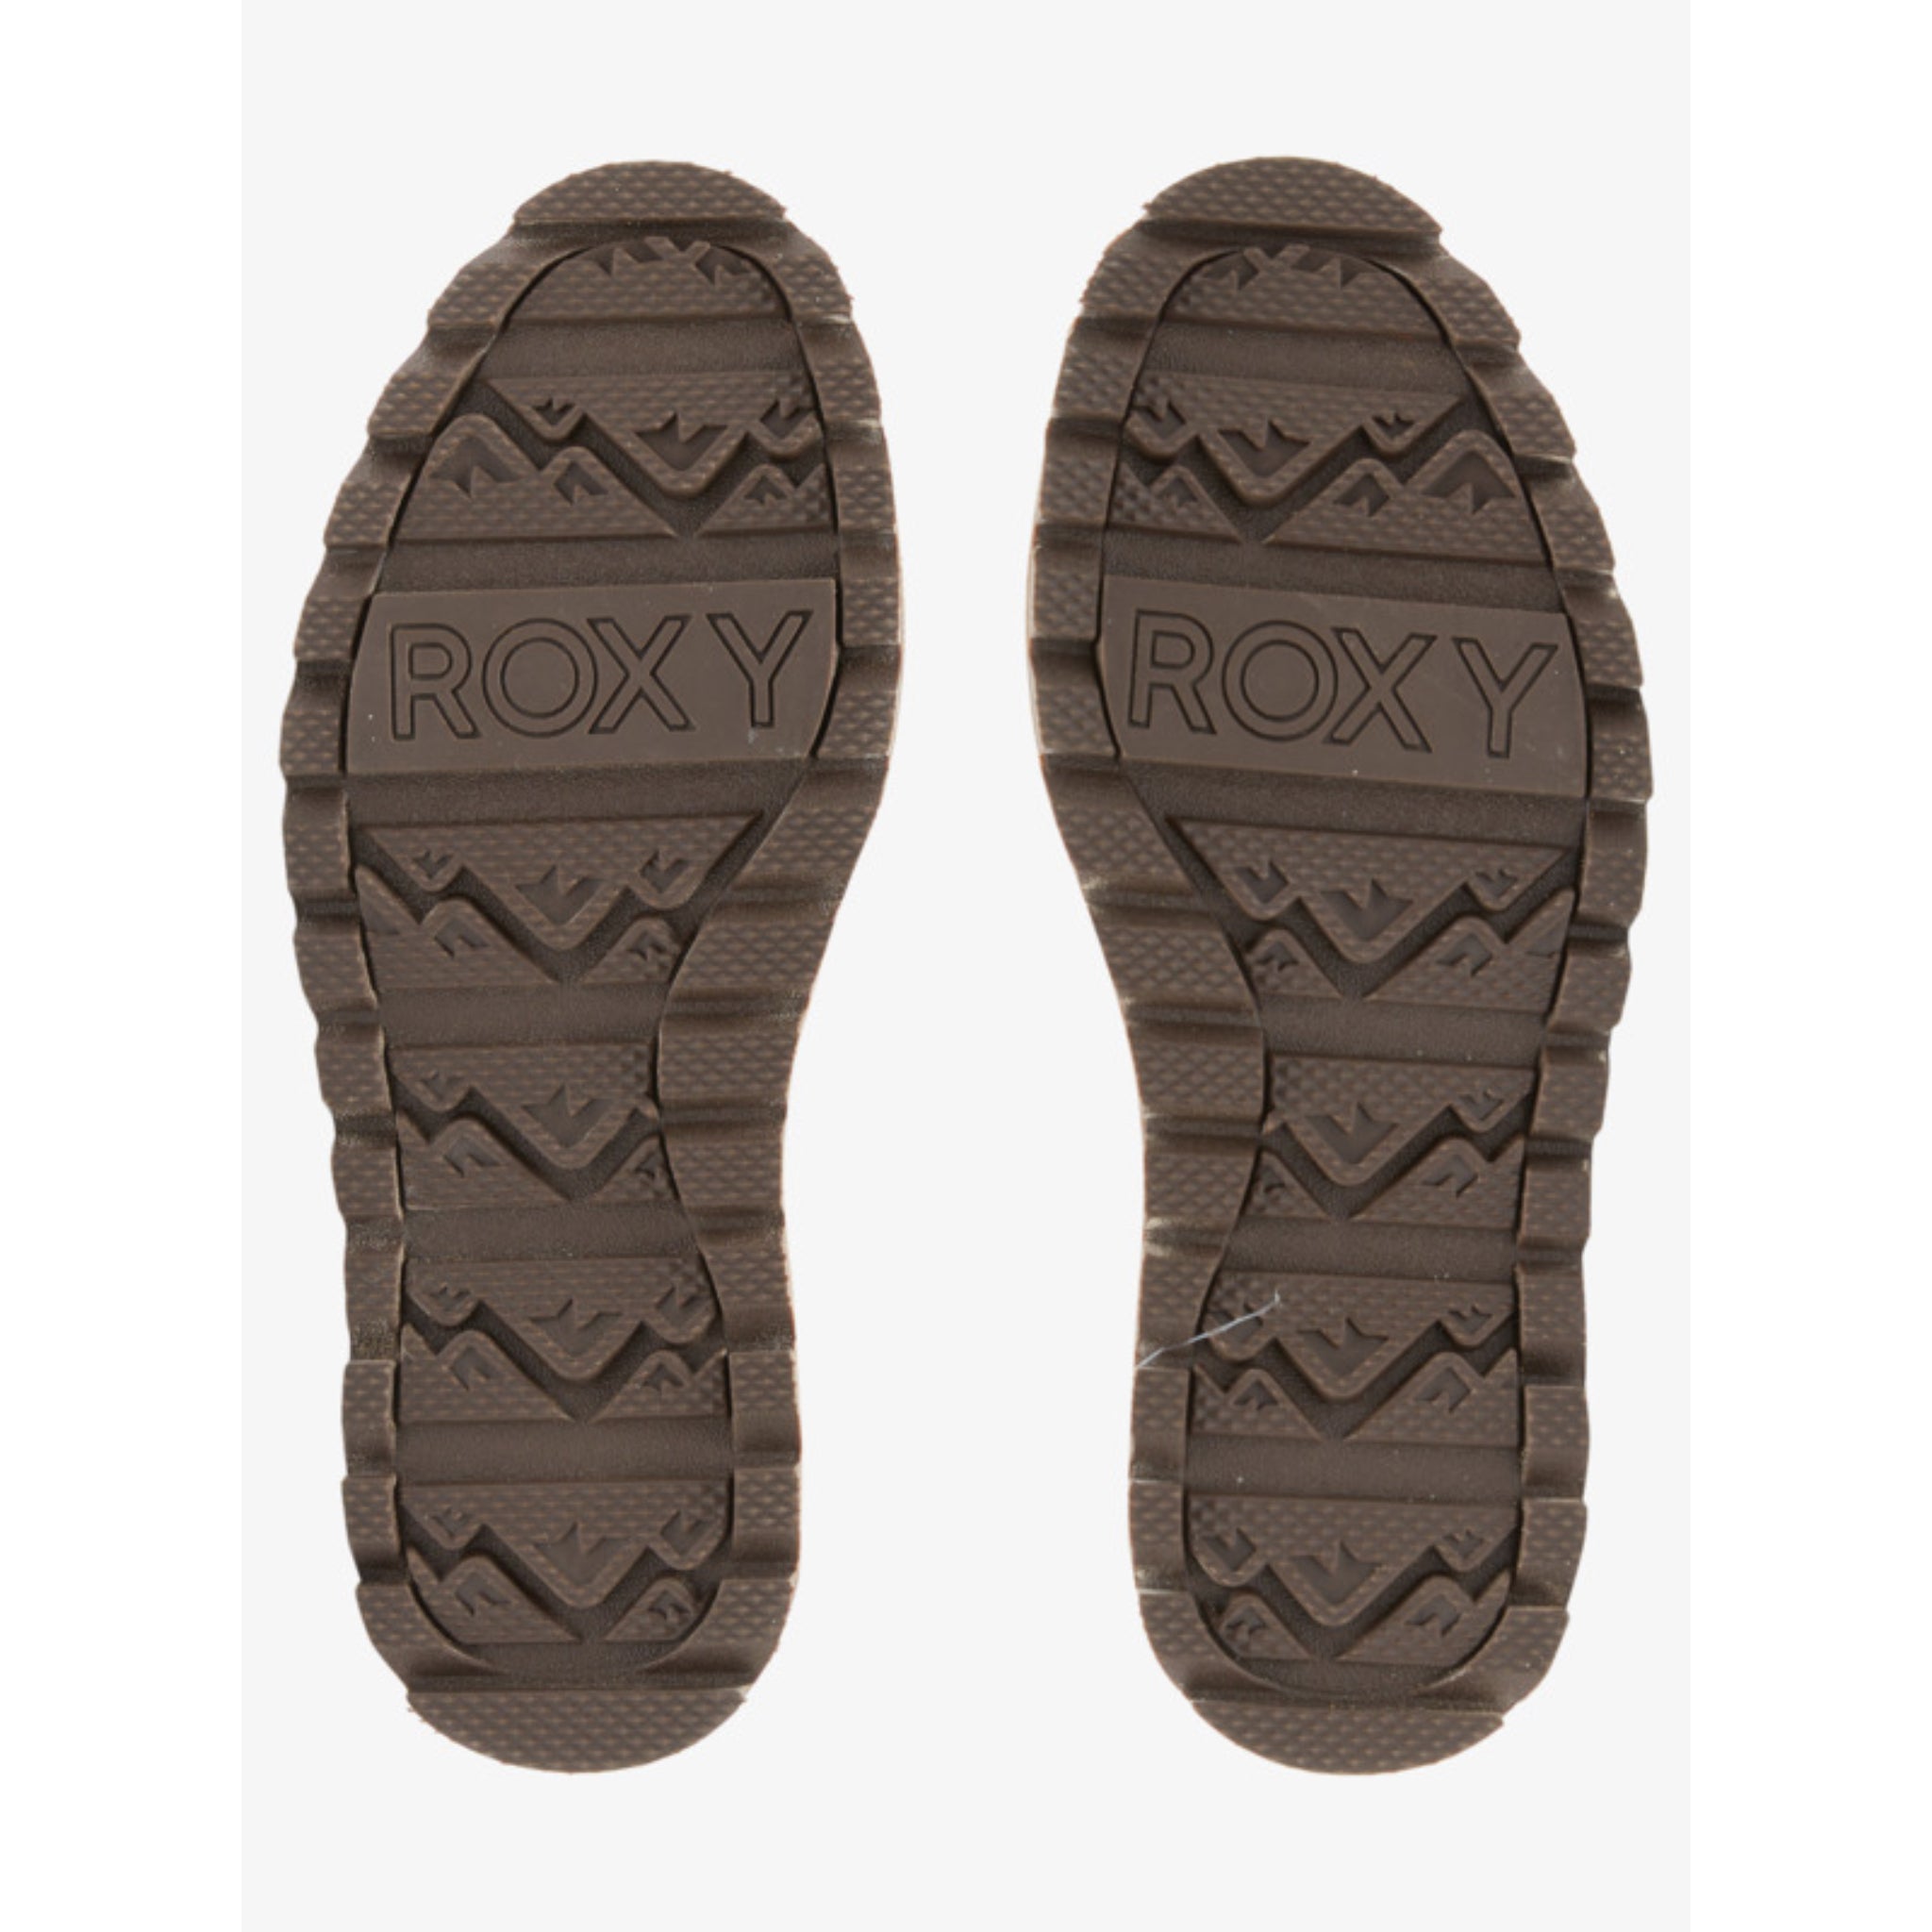 Roxy Brandi III Winter Boot